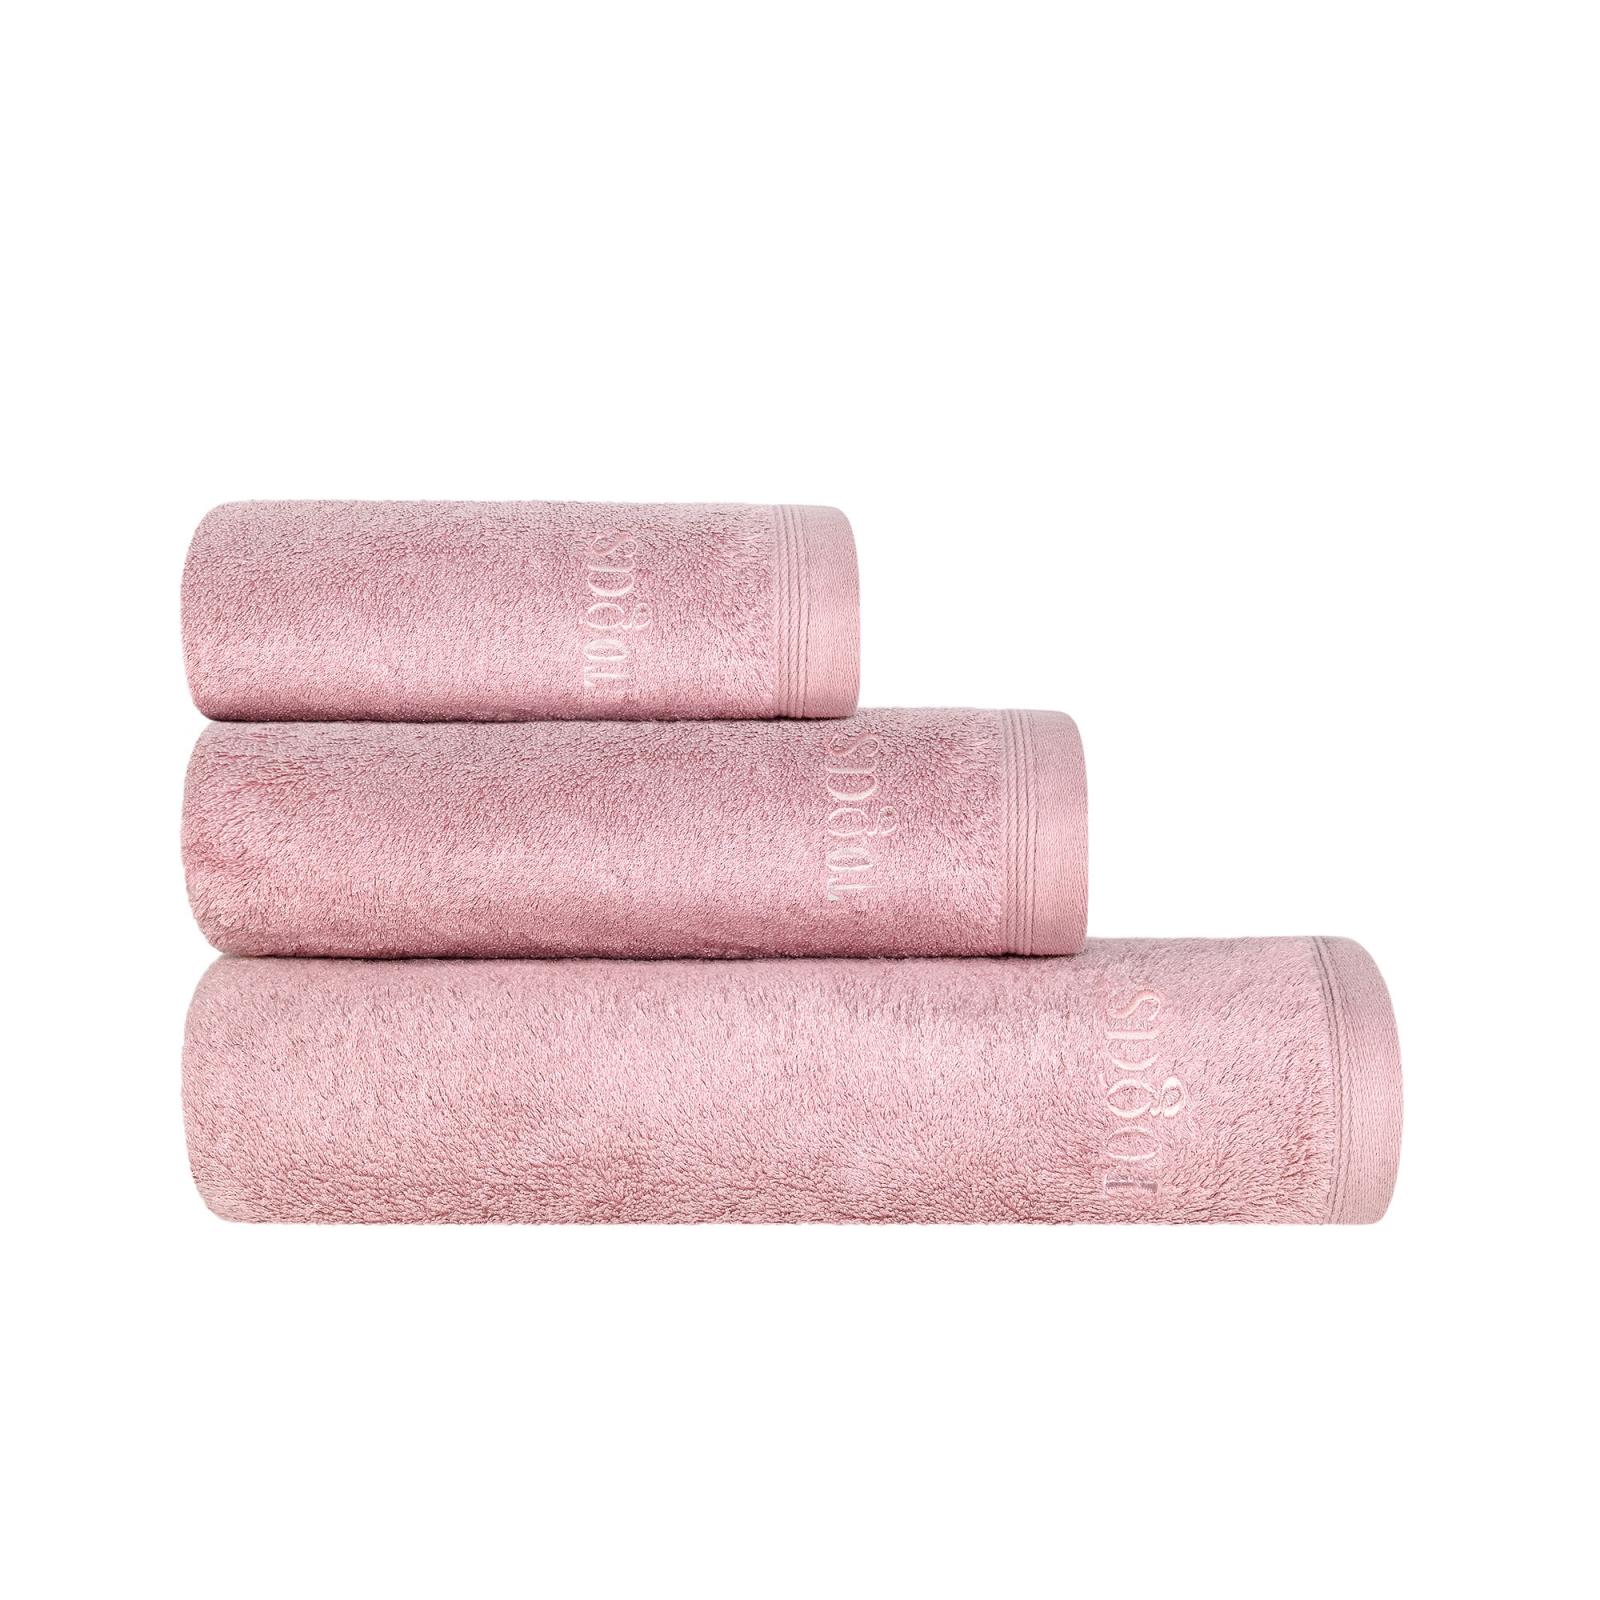 Полотенце Togas Пуатье розовое 70х140 см (10.00.01.1046) полотенце togas пуатье светло серое 70х140 см